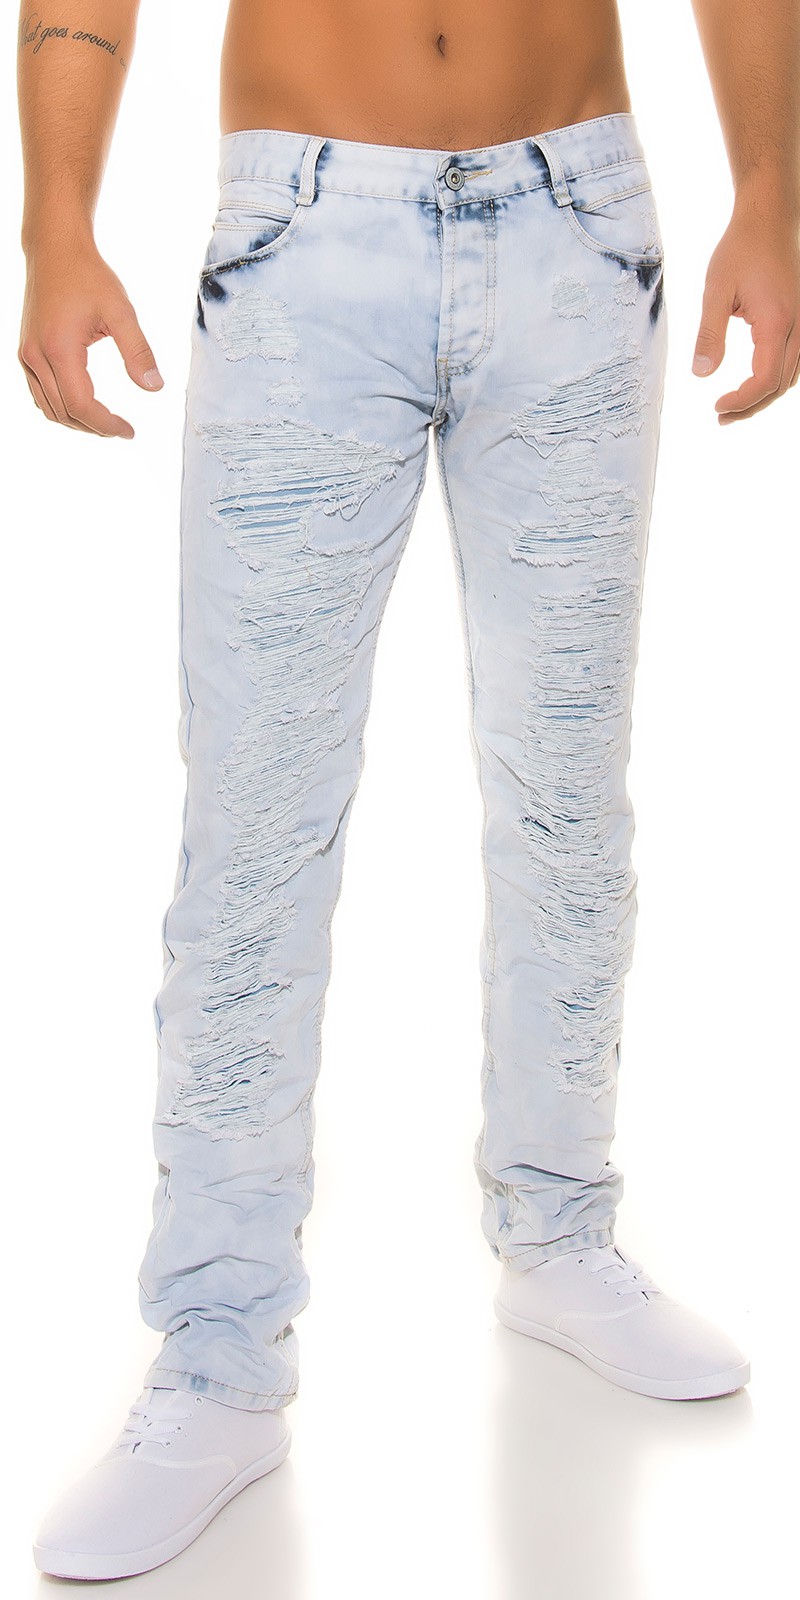 Jeans - Homem 2